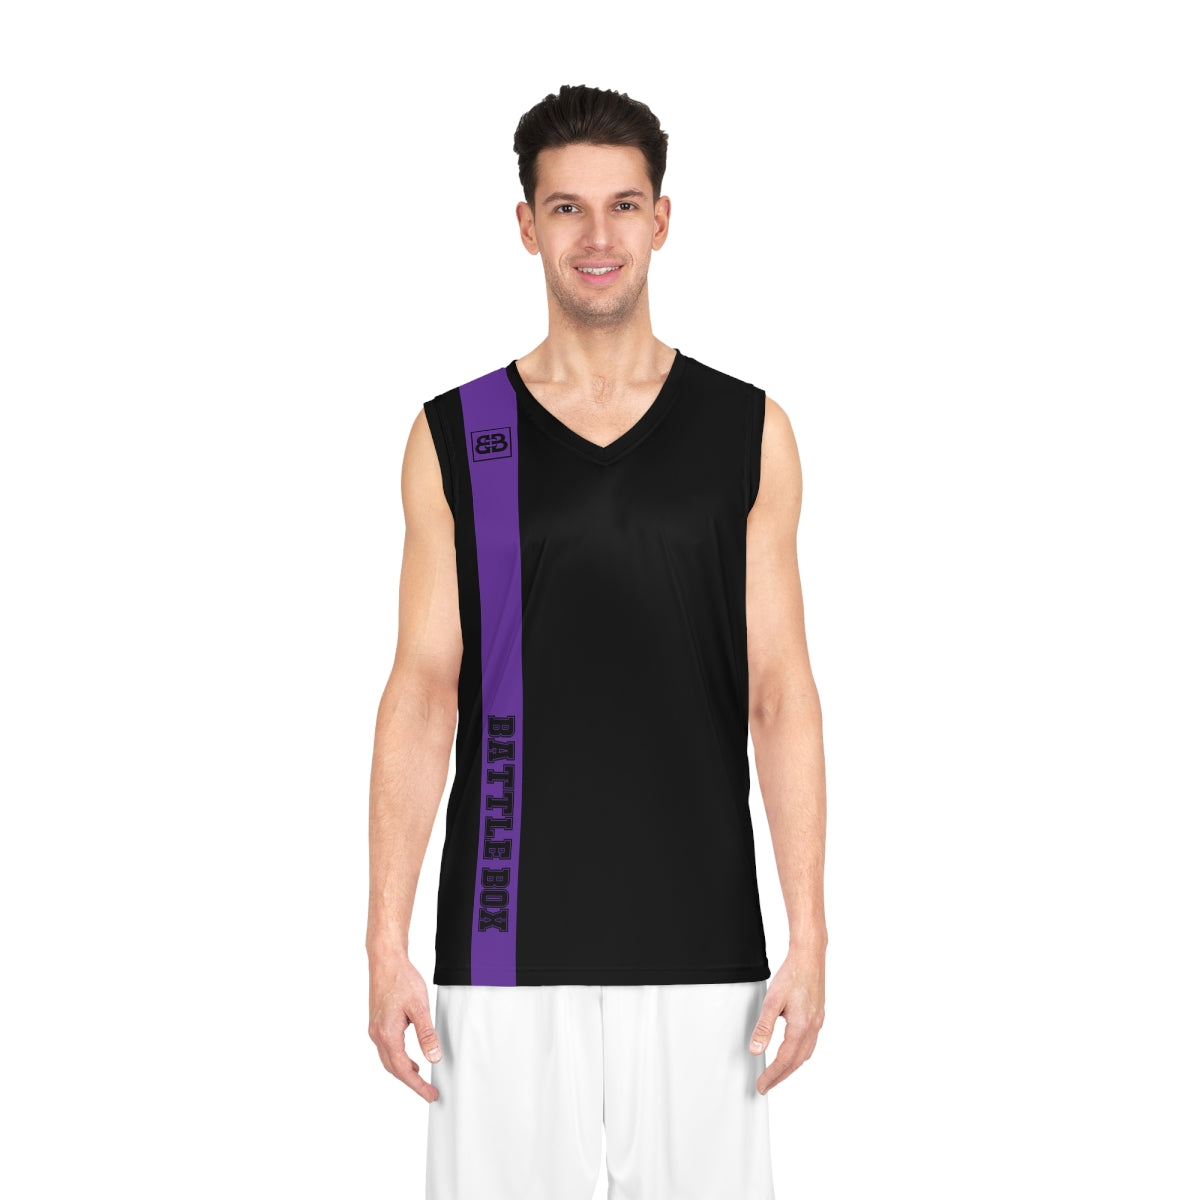 Battle Box Black Purple Basketball Jersey